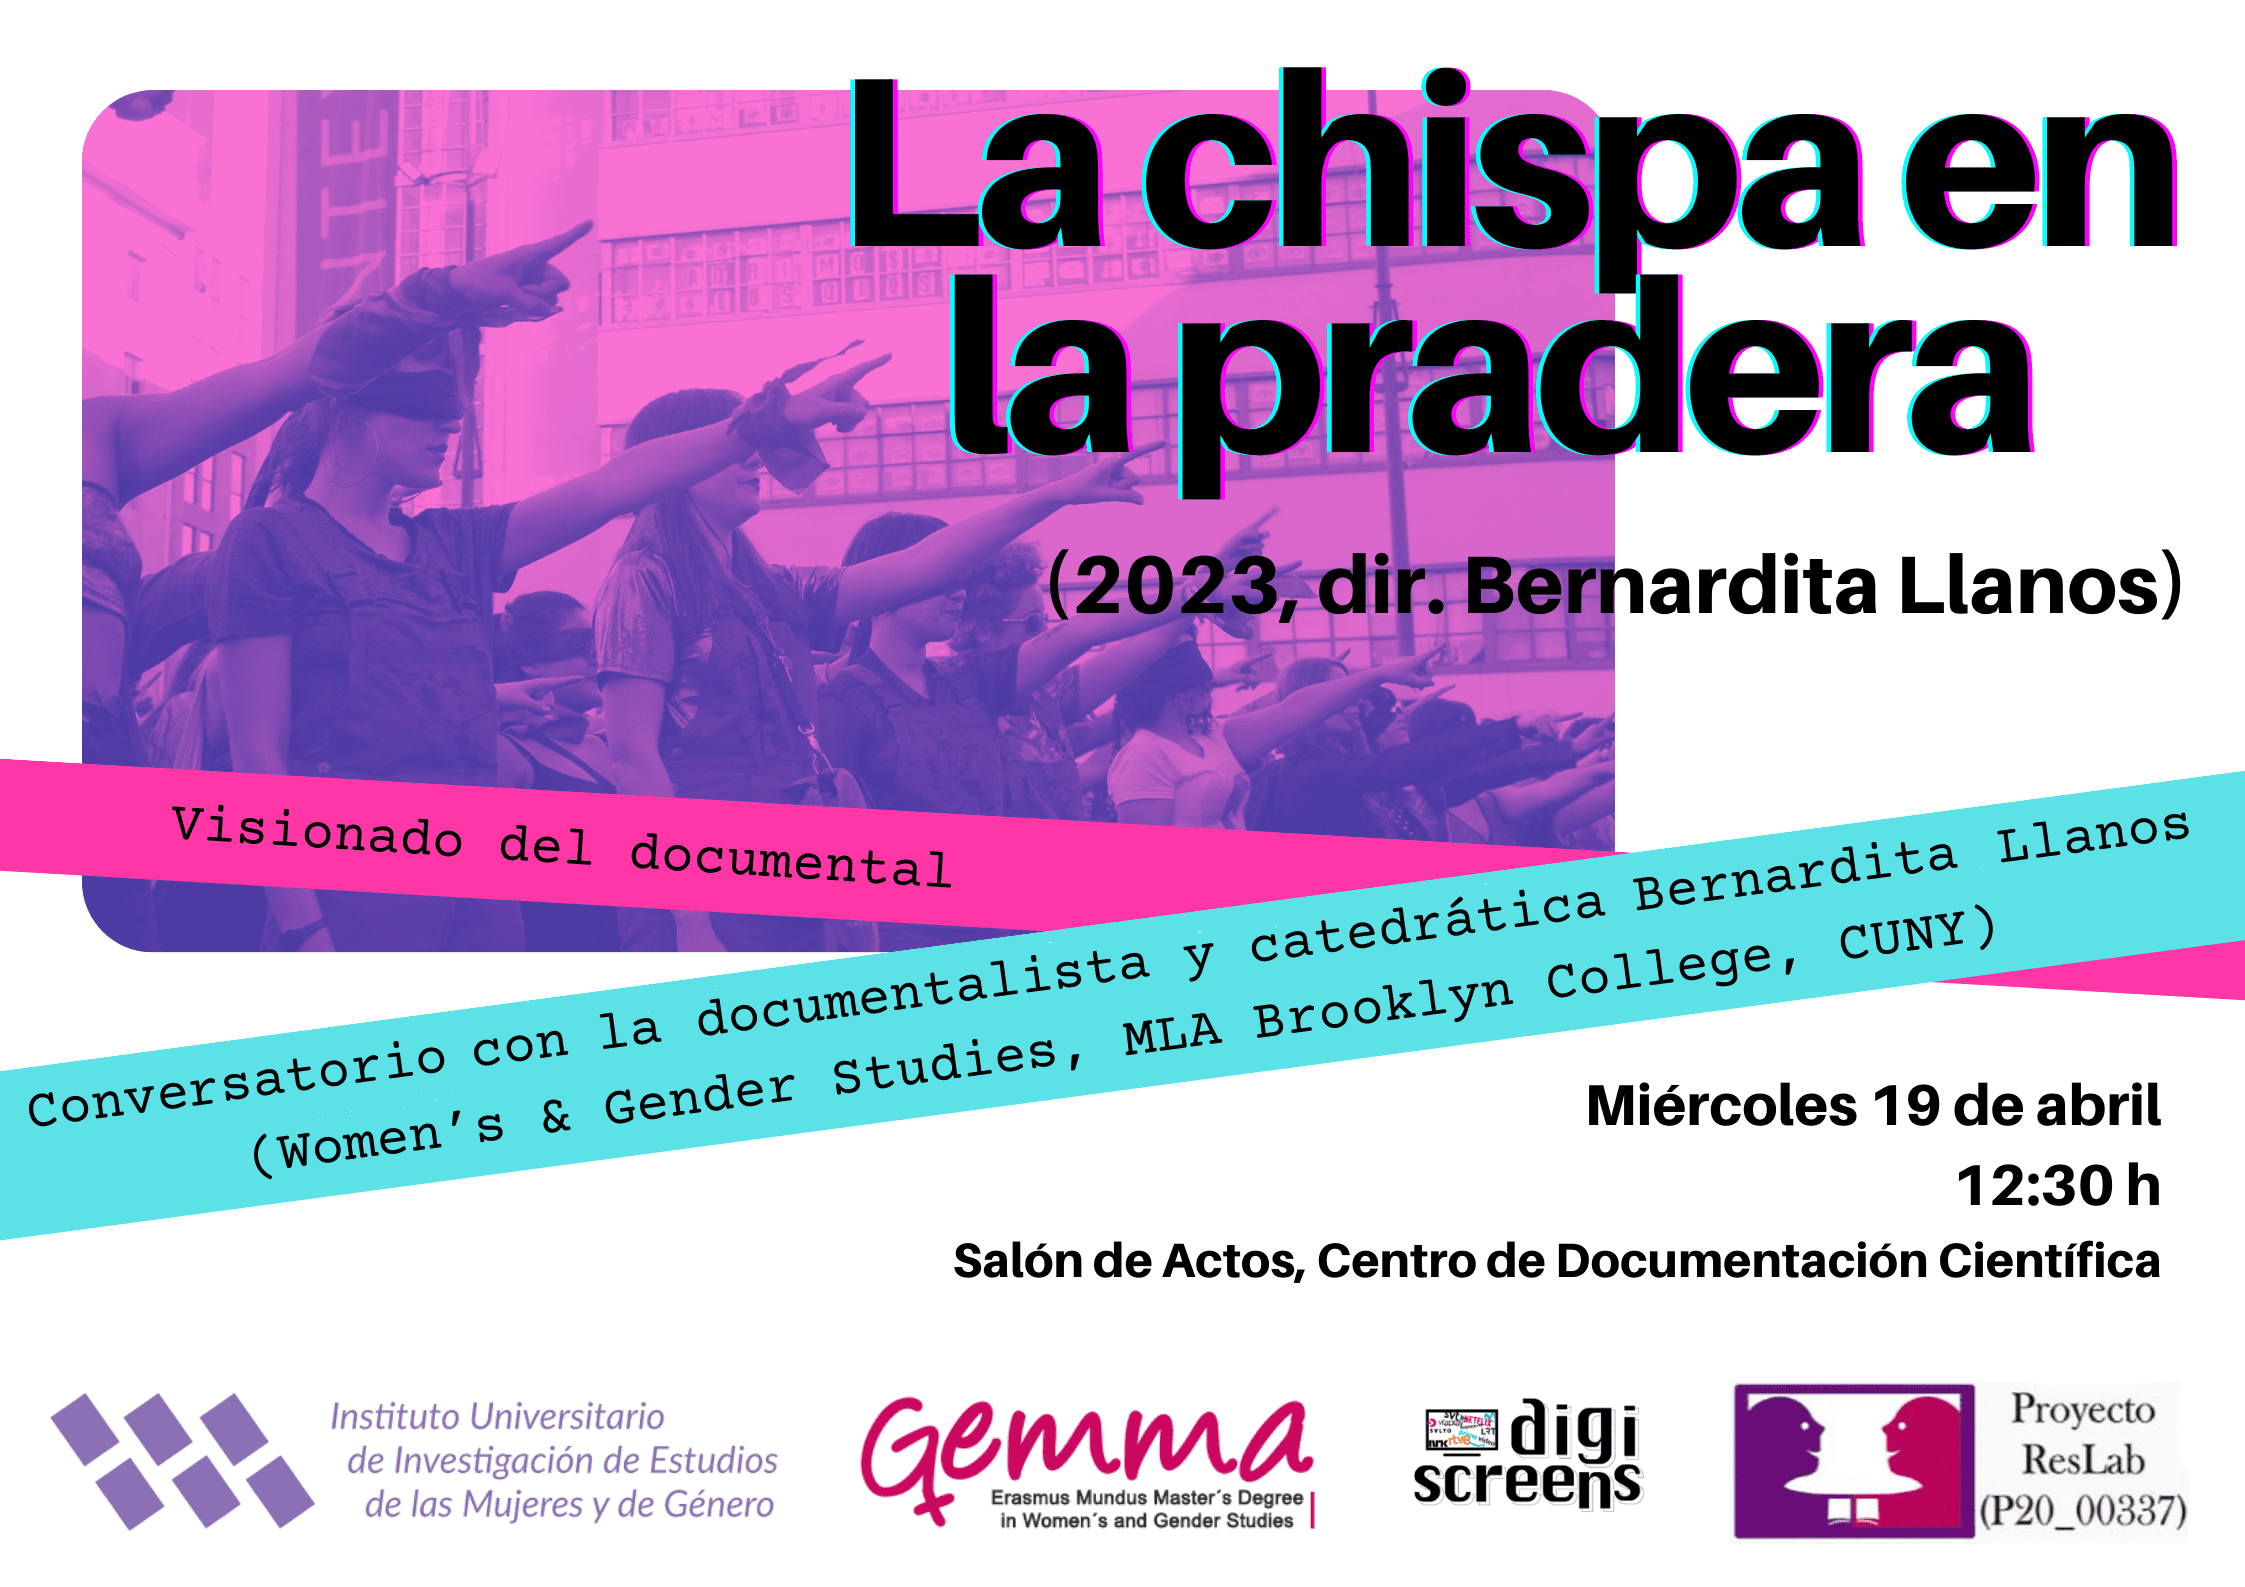 Poster of la Chispa de la Pradera Documentary